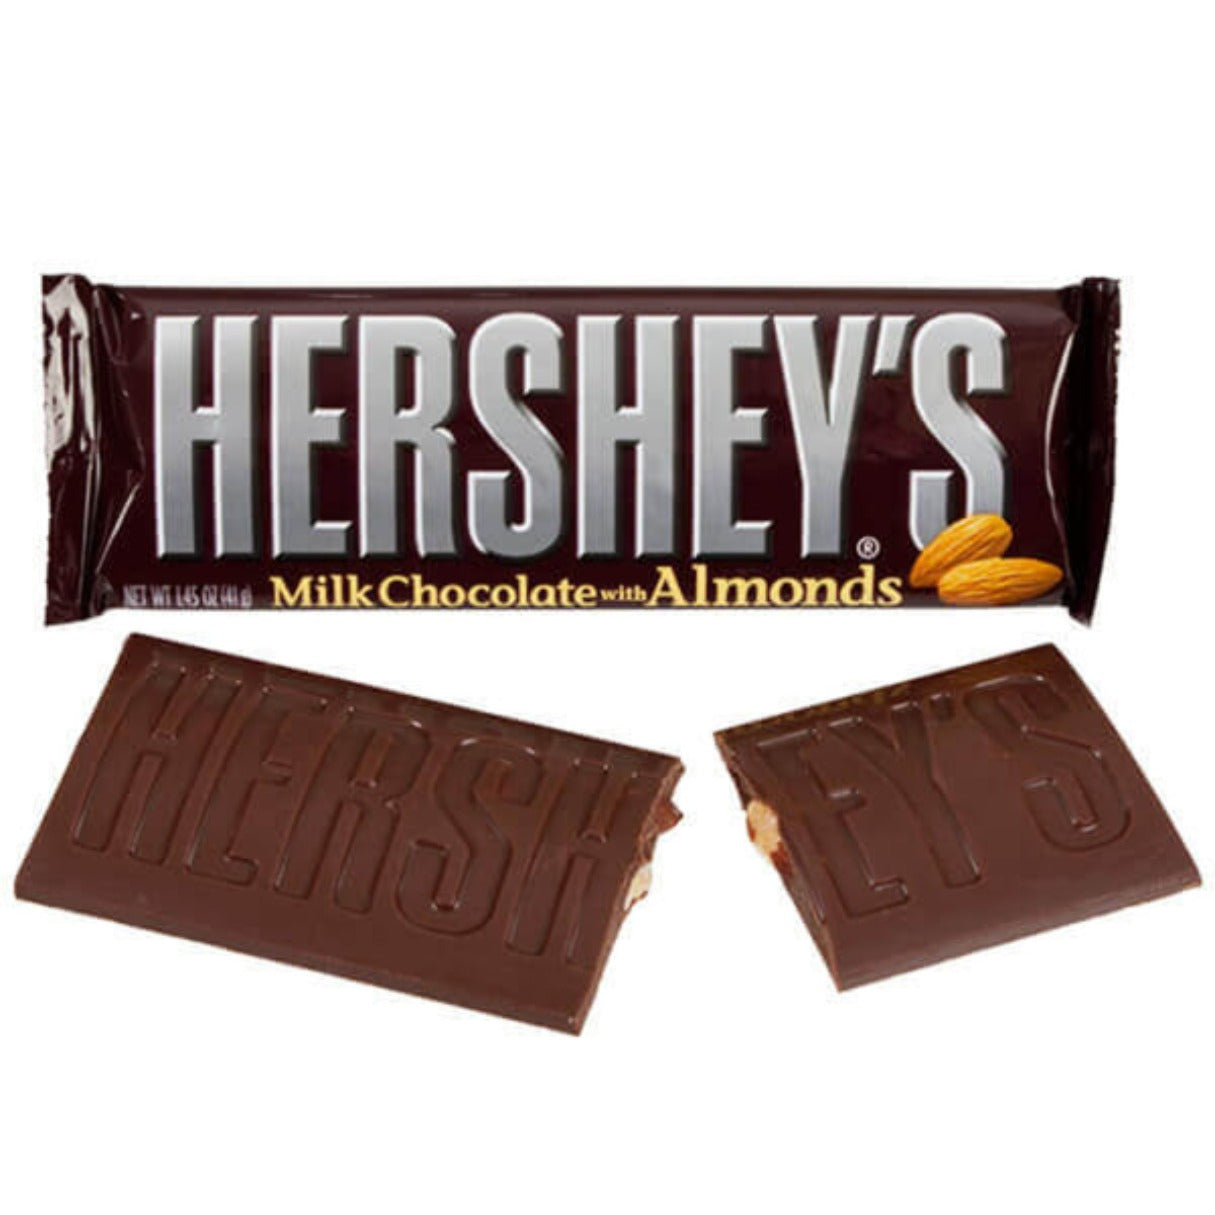 Hershey's Milk Chocolate King with Almonds 2.6oz - 18ct – I Got